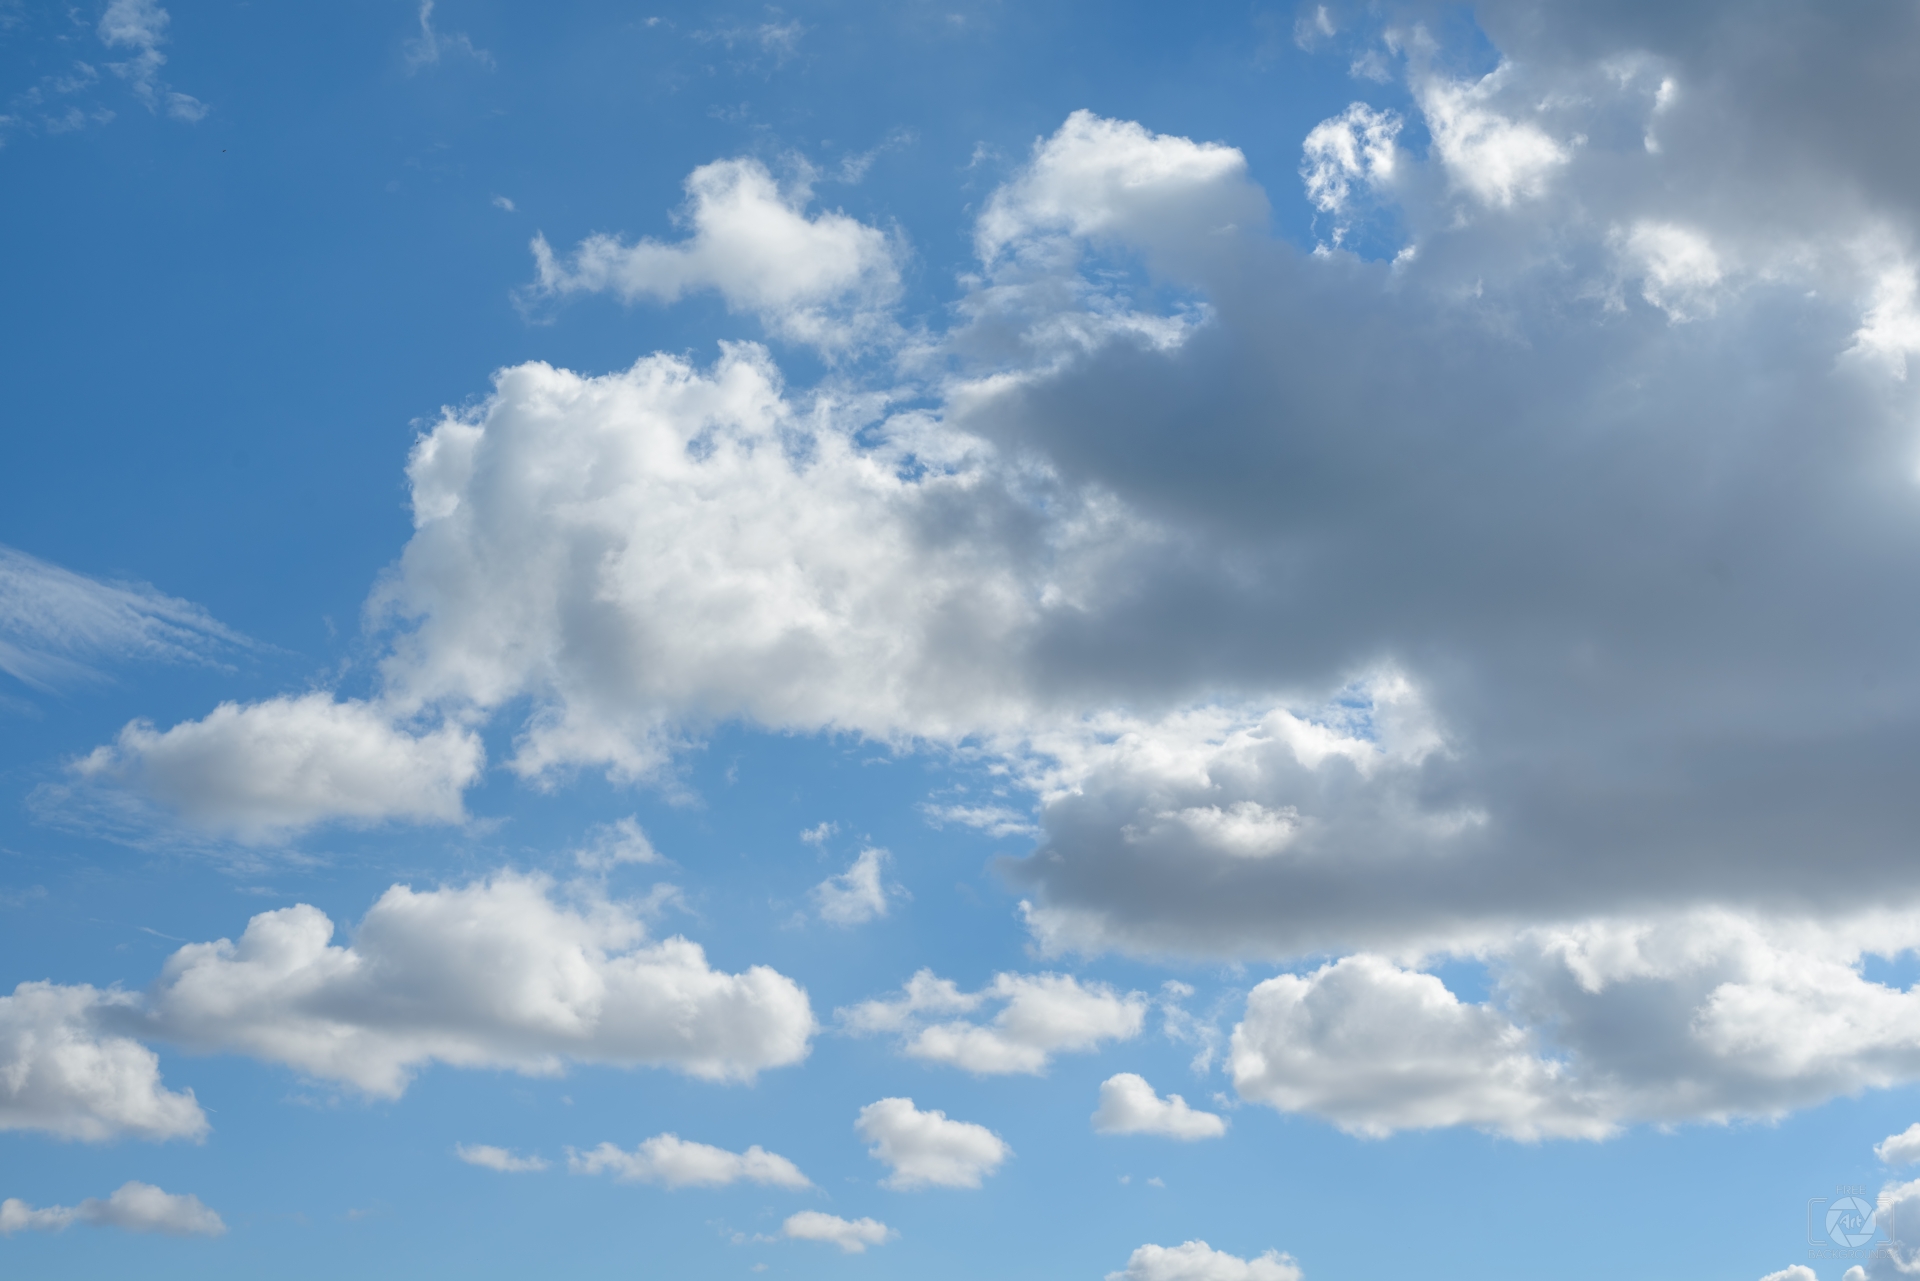 Hình nền bầu trời xanh chắc chắn sẽ tạo cảm giác dễ chịu và đầy năng lượng trong mỗi ngày của bạn. Hãy xem qua vô số bức ảnh nền thiên nhiên vi diệu, với bầu trời xanh ngút ngàn và mây trôi phóng khoáng.